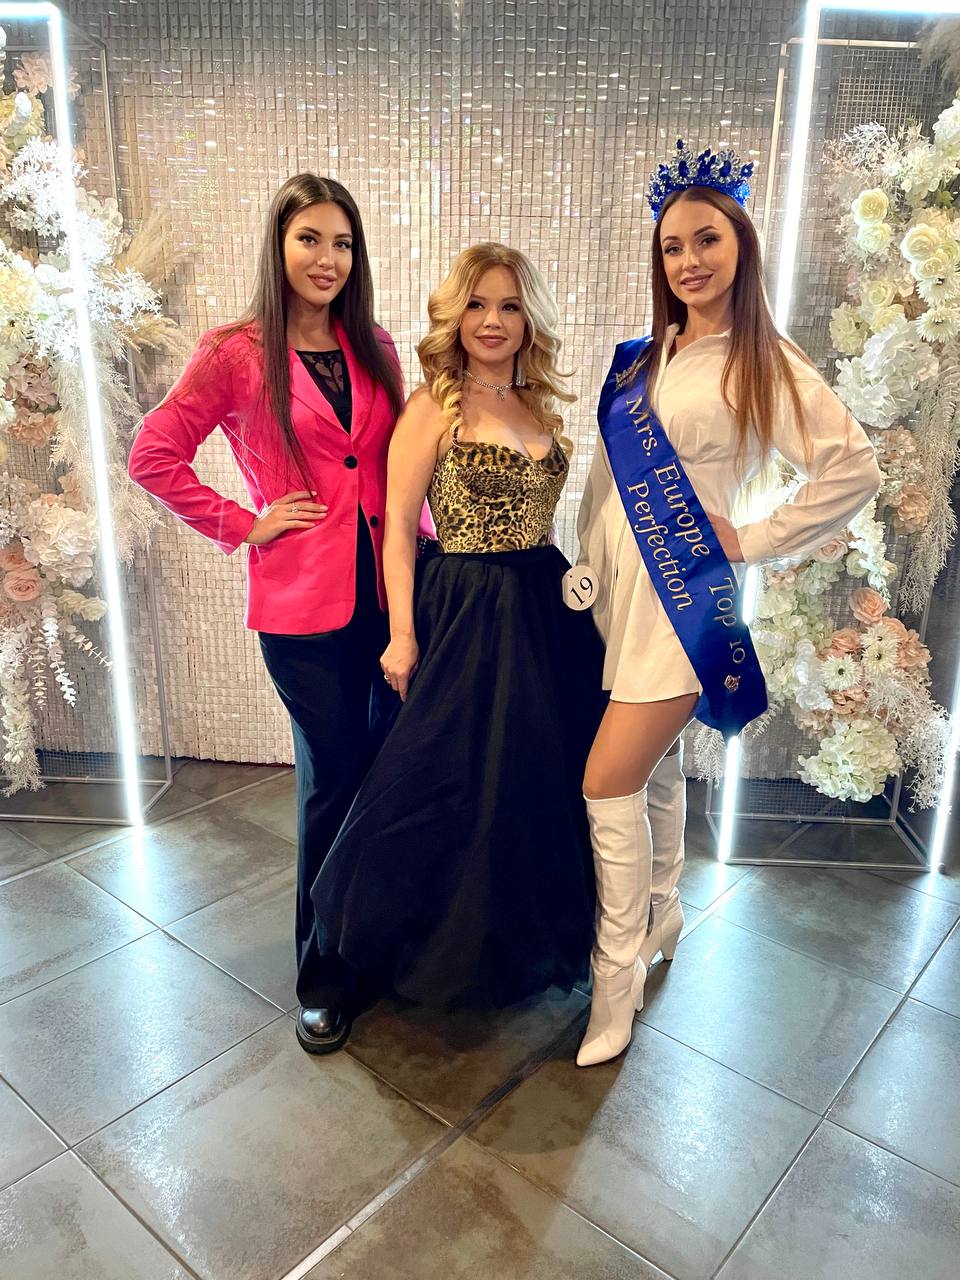 В начале декабря в Рязани прошел конкурс Grand Fashion Queen, на котором многодетная мама Вероника Малыгина завоевала главную корону победительницы. Как все прошло, мы узнали из первых уст.